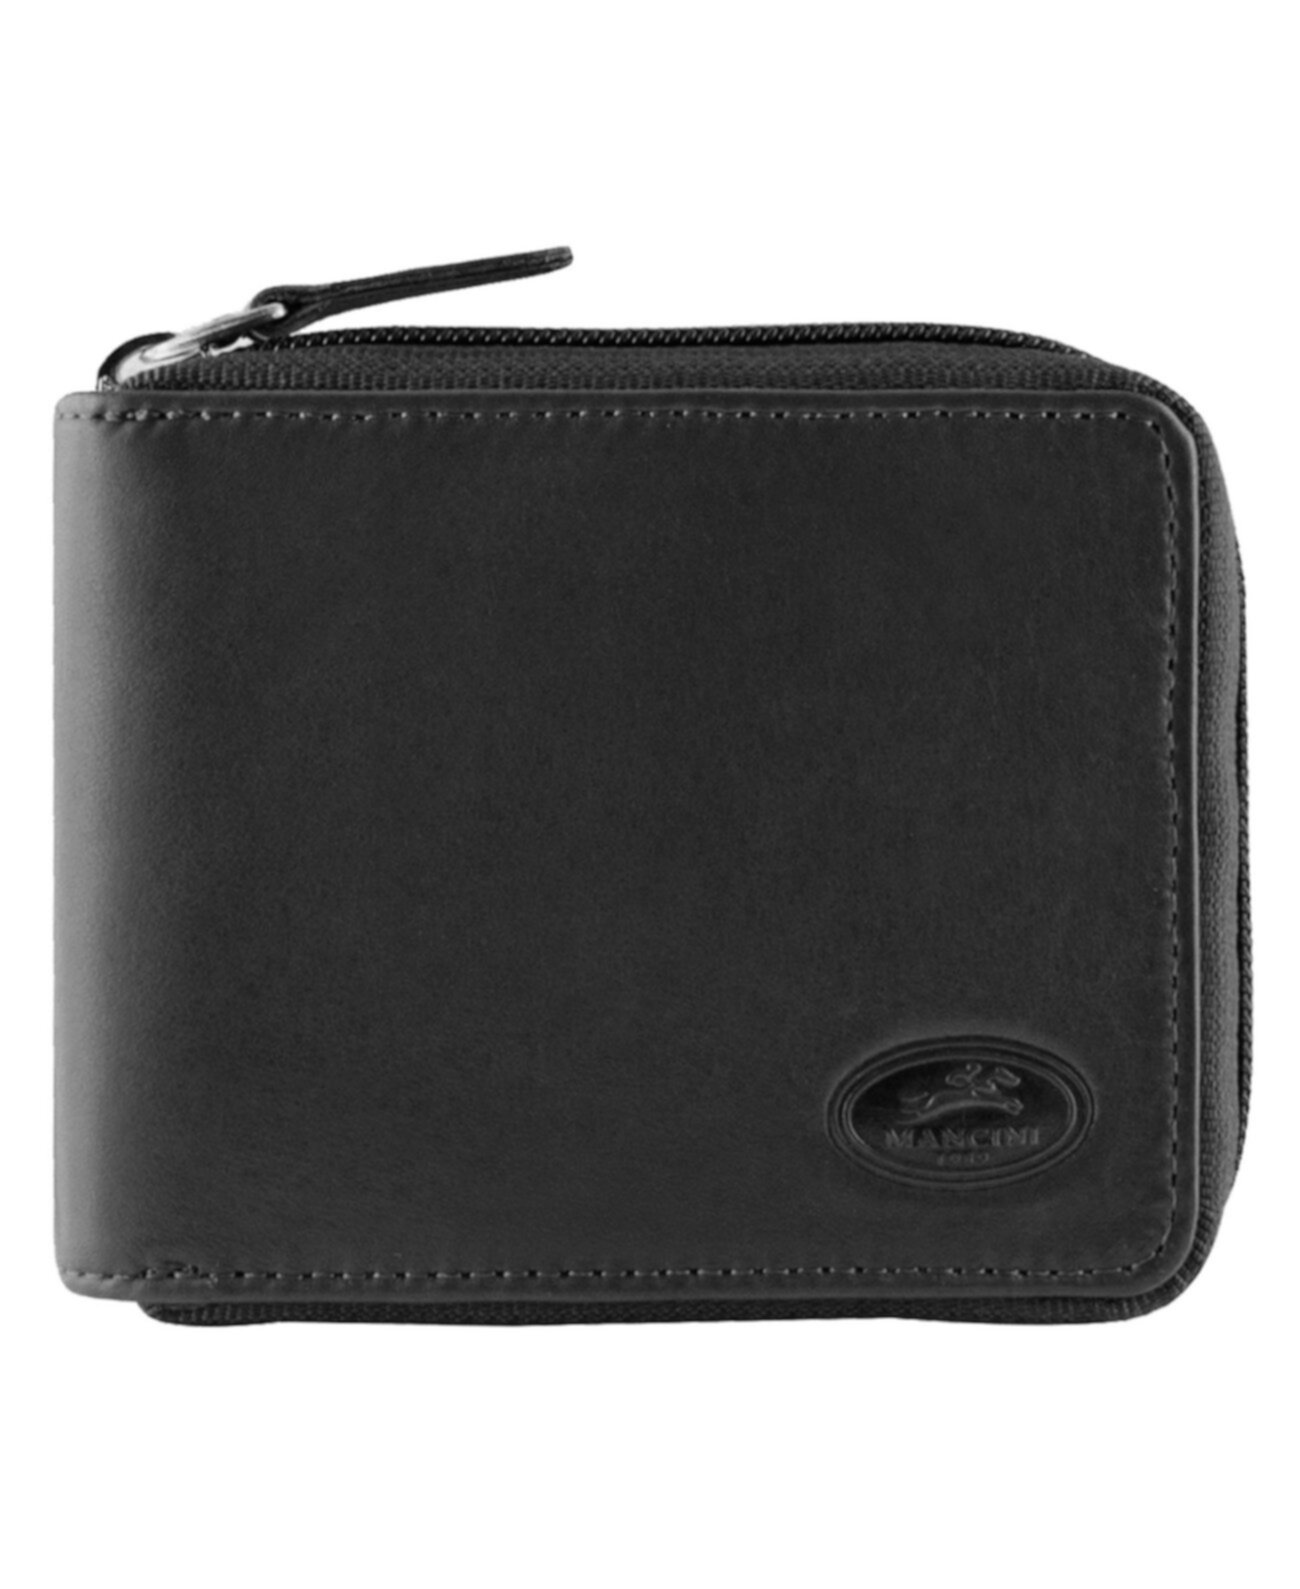 Manchester Collection Мужской безопасный RFID кошелек на молнии с карманом для монет Mancini